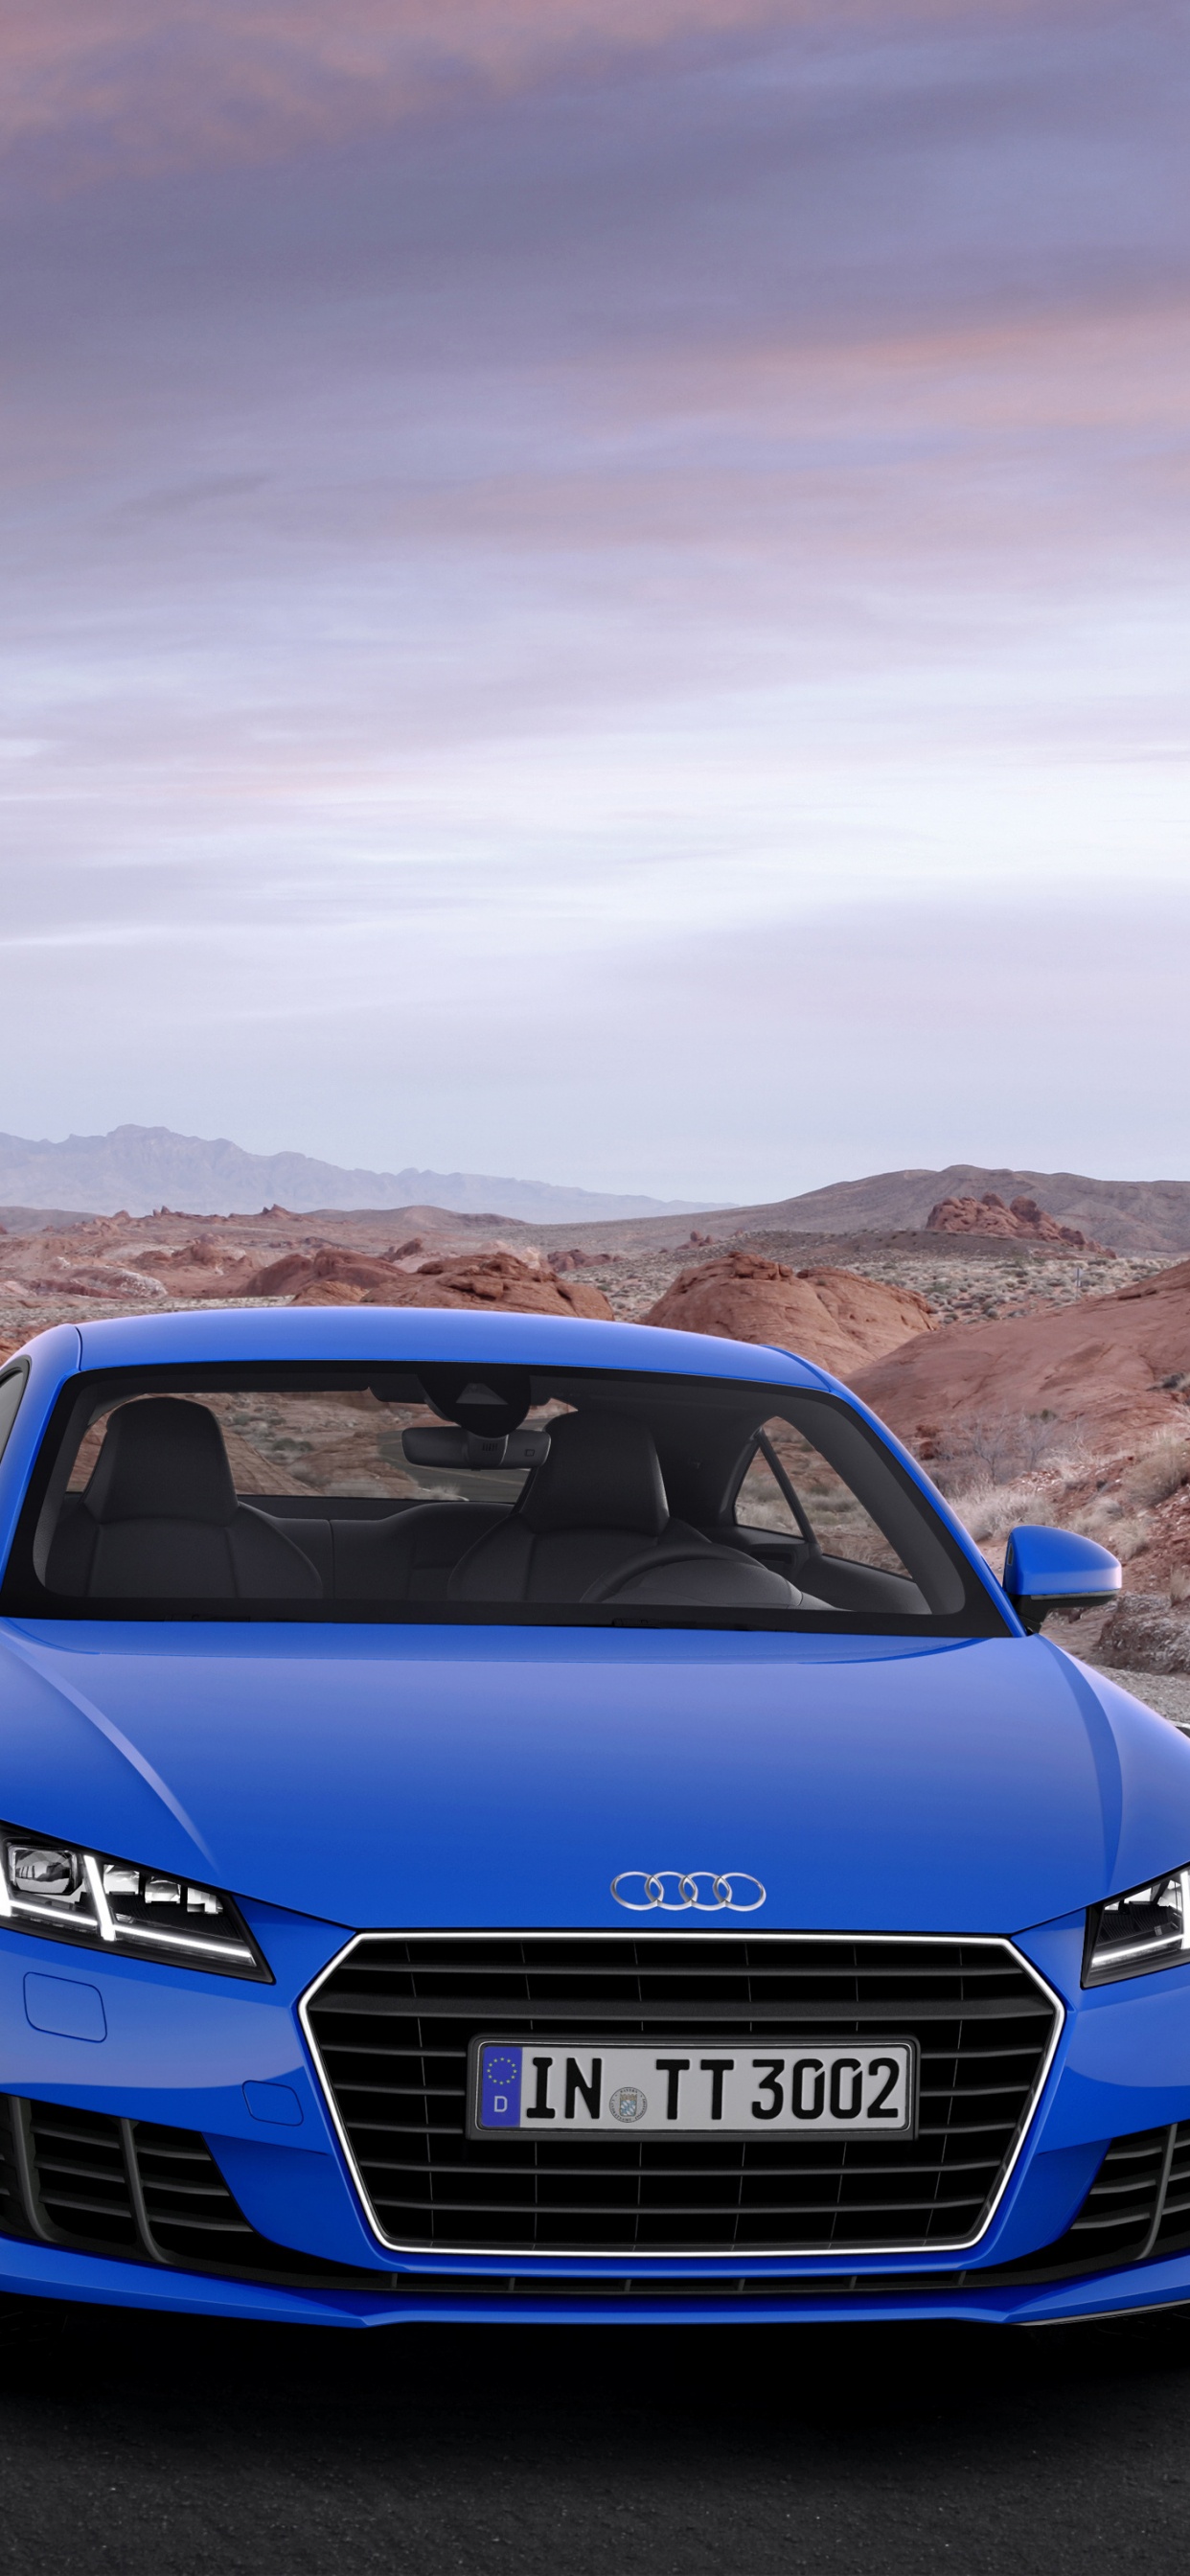 Audi a 4 Azul en la Carretera Durante el Día. Wallpaper in 1242x2688 Resolution